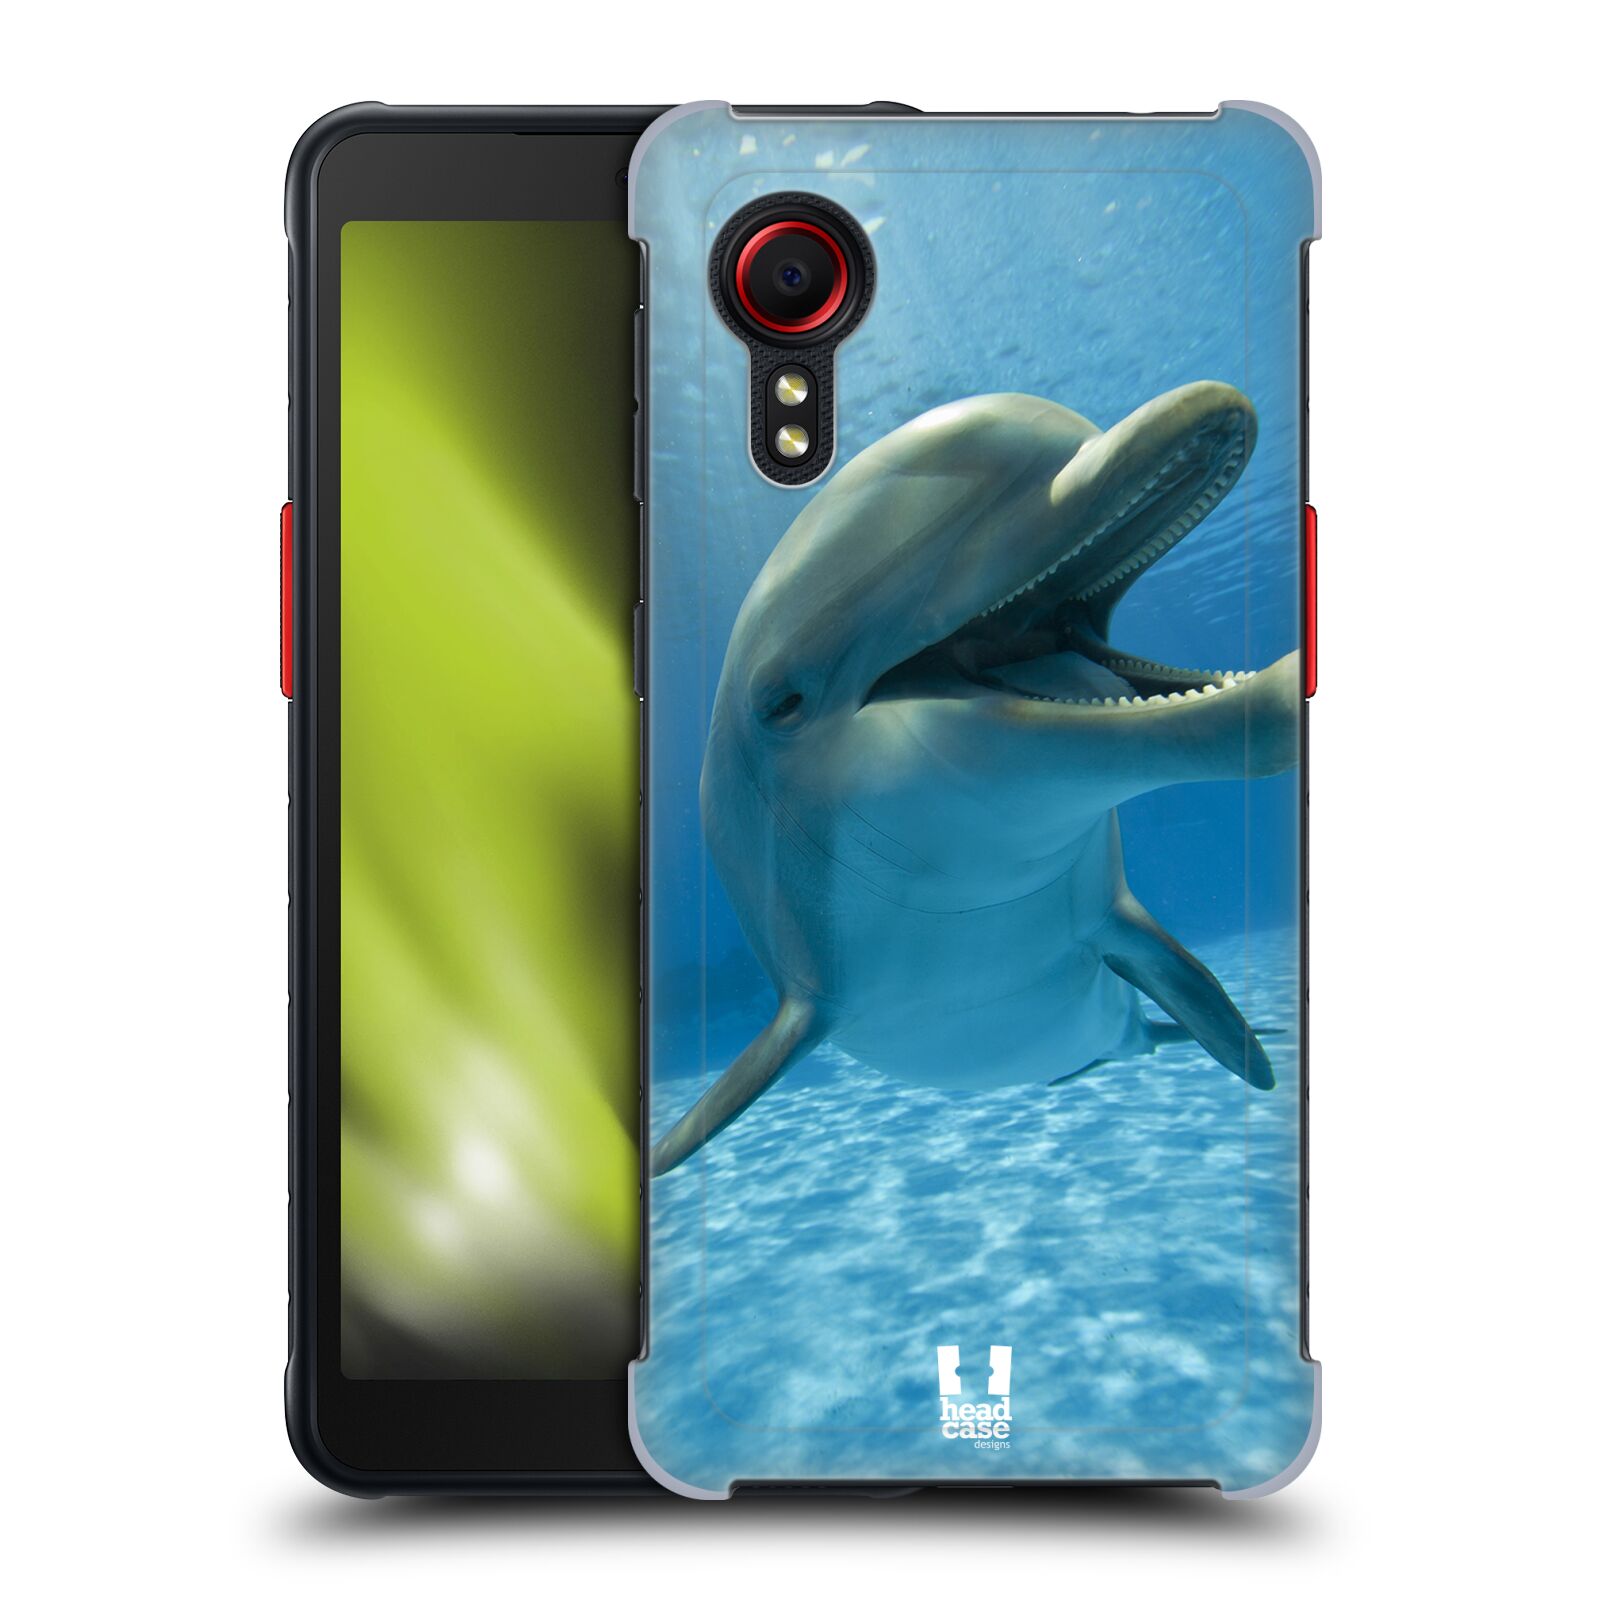 Zadní obal pro mobil Samsung Galaxy Xcover 5 - HEAD CASE - Svět zvířat delfín v moři